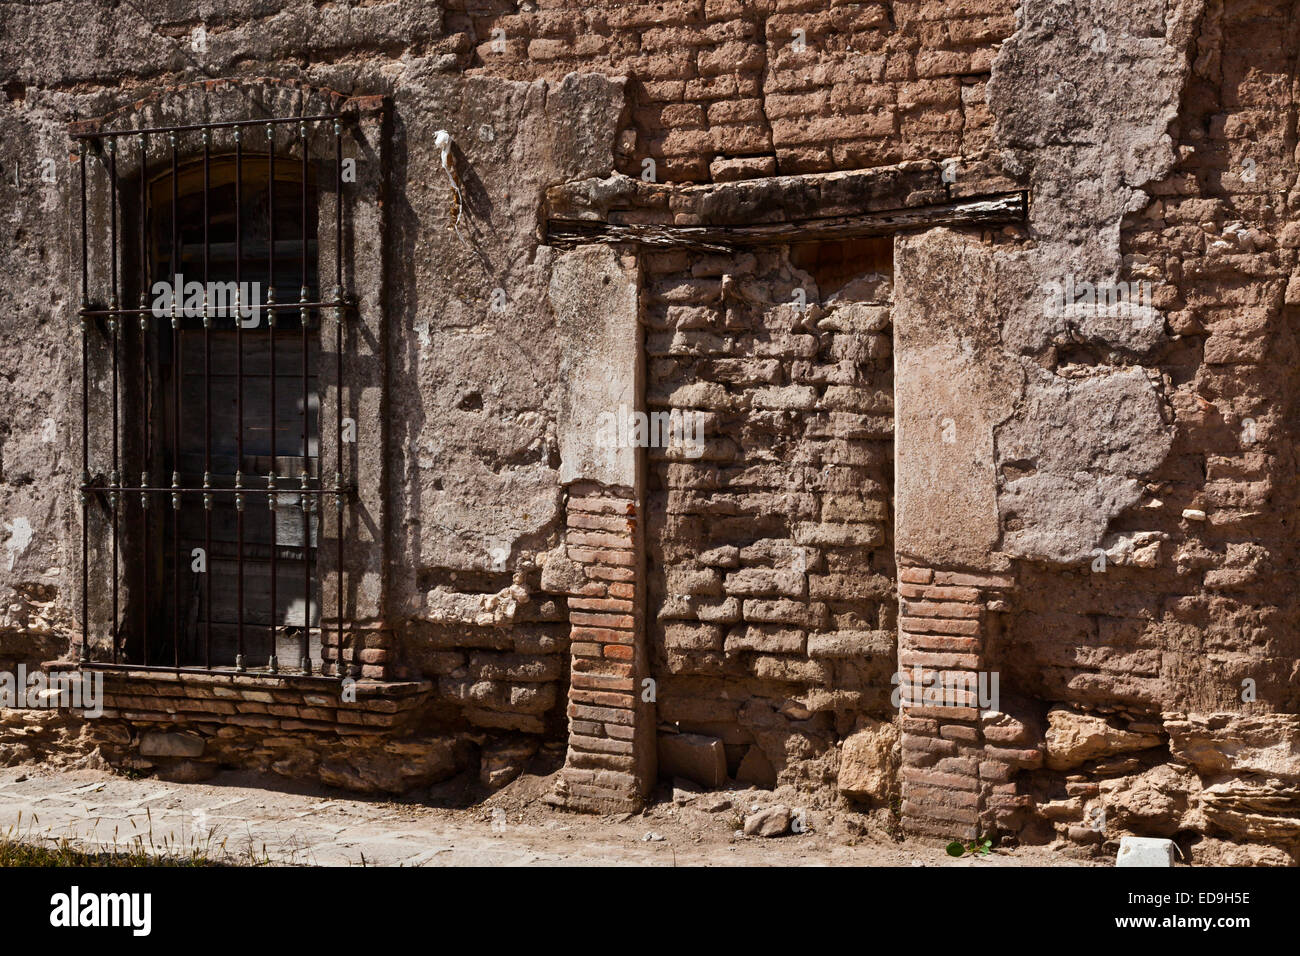 Un vieux mur fenêtre adobe et en minéraux DE POZOS historique qui était autrefois une grande ville minière - MEXIQUE Banque D'Images